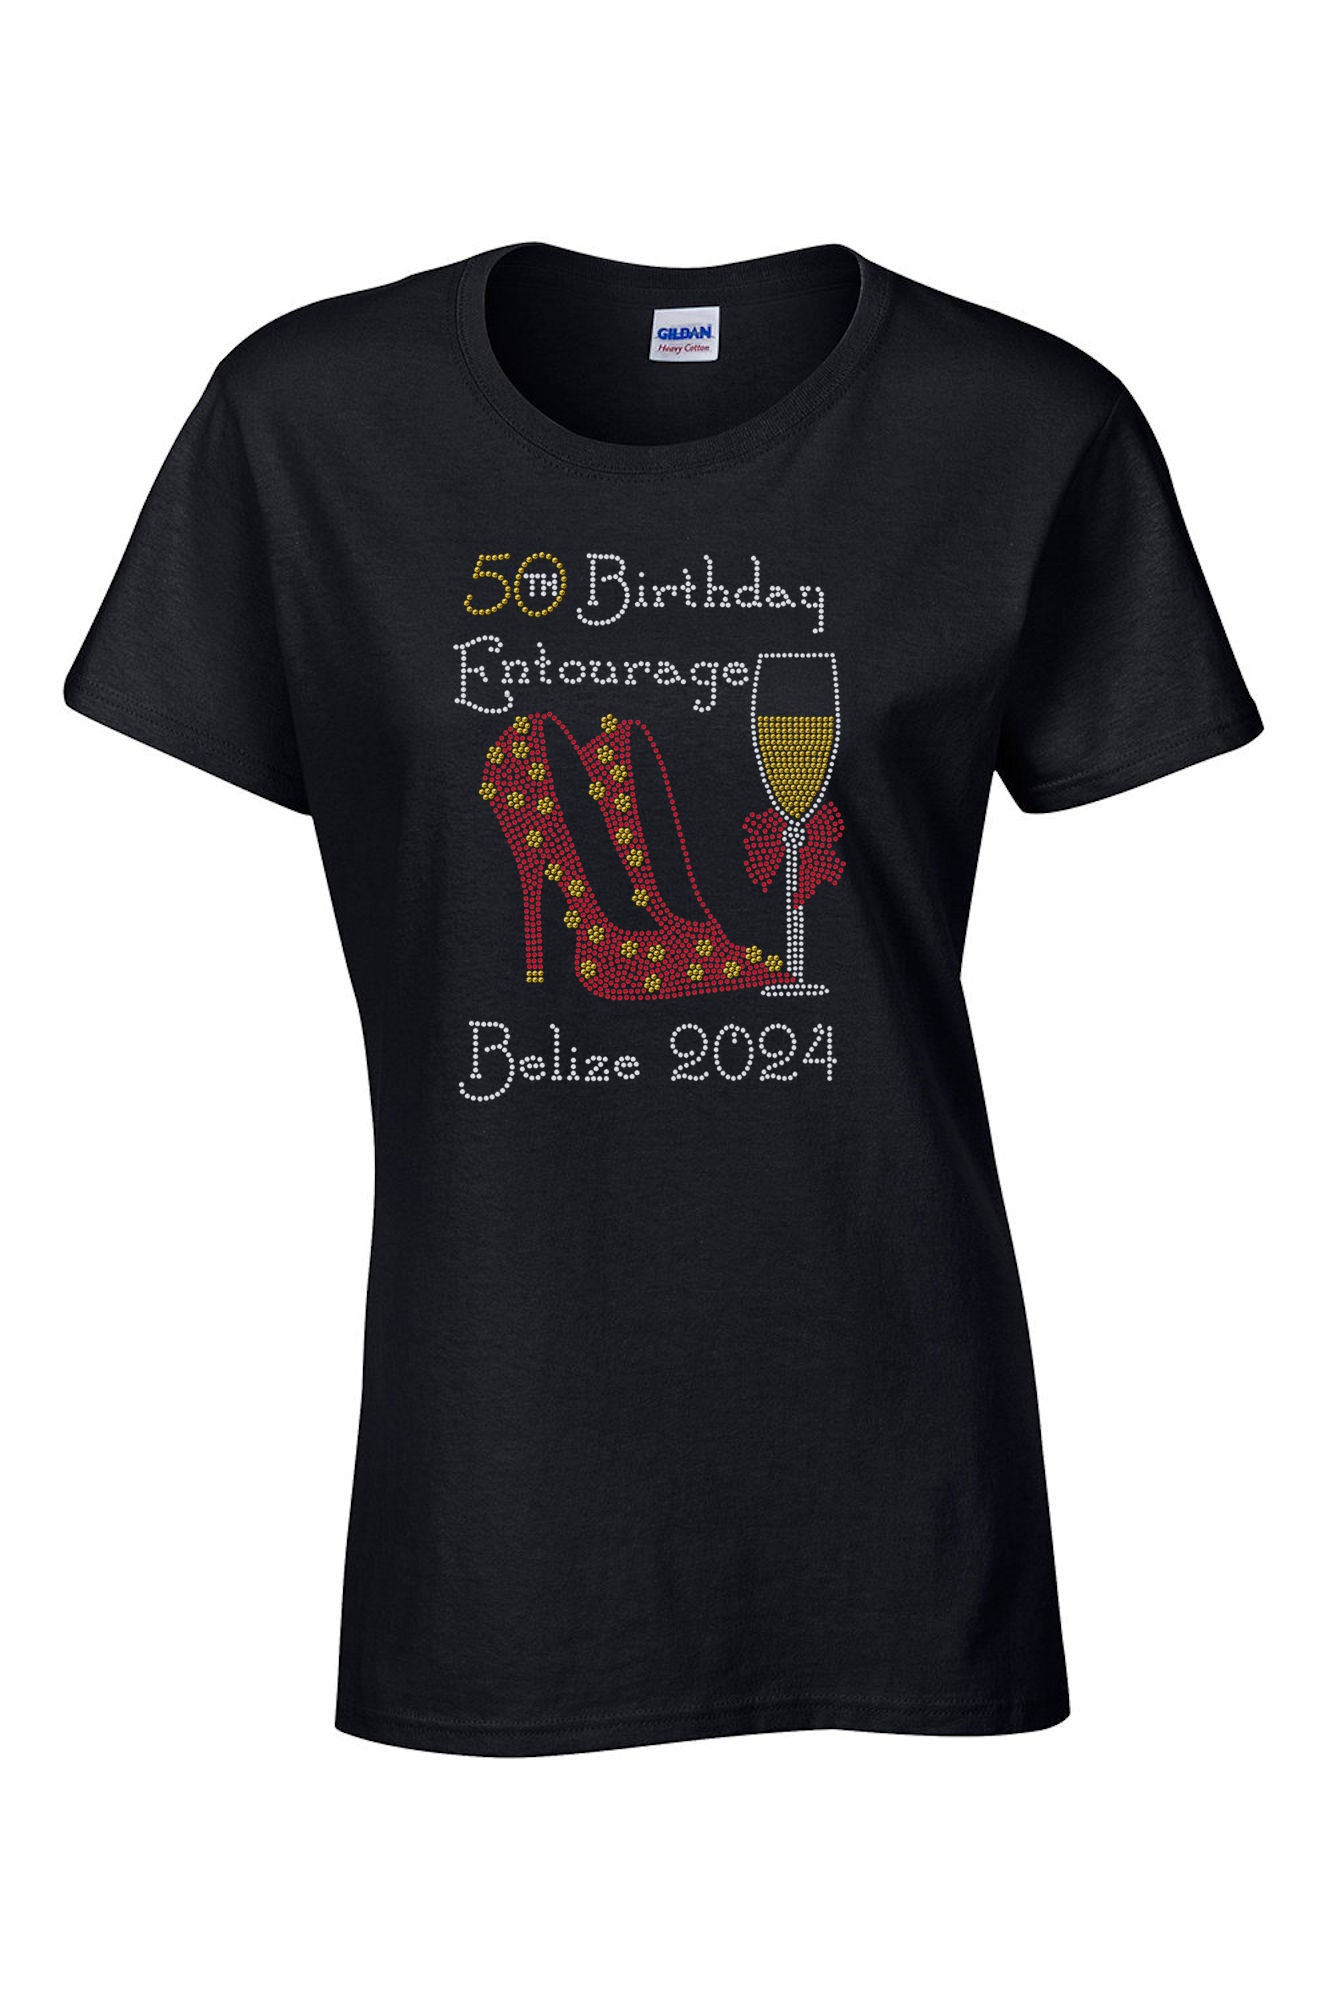 51st Birthday Entourage Personalized Rhinestone T-Shirt